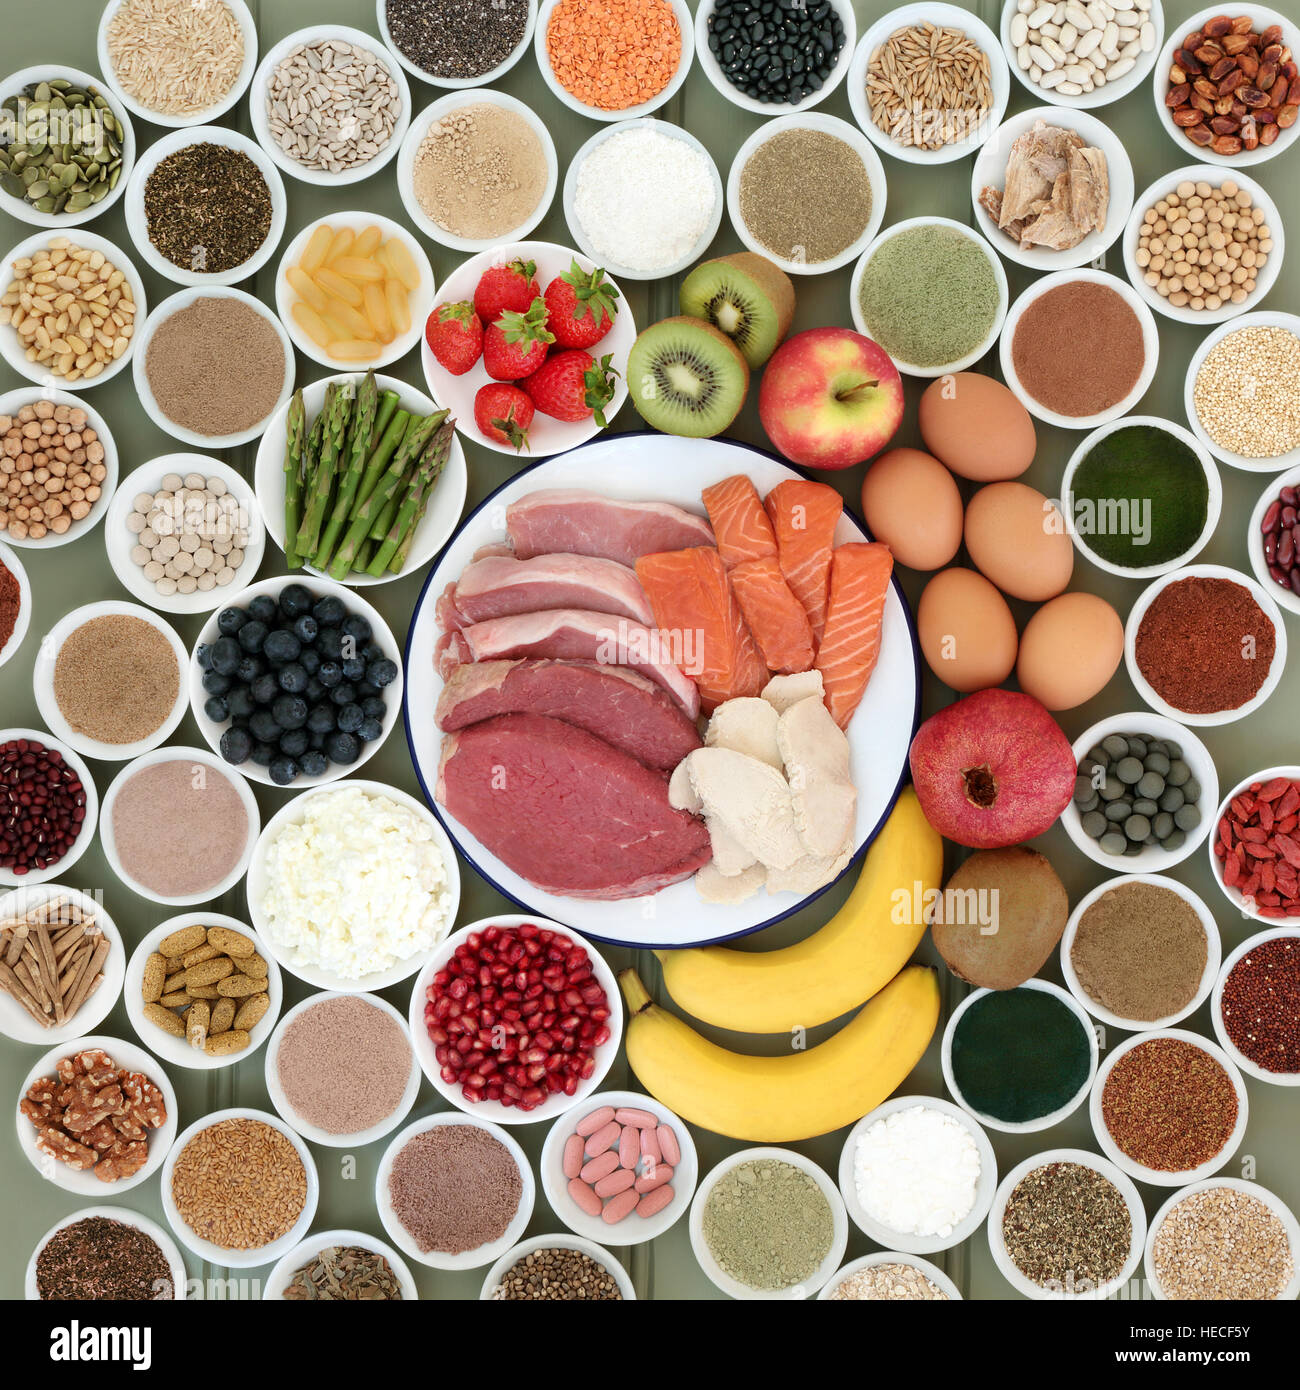 Großen Naturkost-Auswahl für Bodybuilder mit Fleisch, Lachs, Milchprodukte, Früchten, Nüssen, Hülsenfrüchten, Samen, Getreide und Ergänzung Pulver Stockfoto